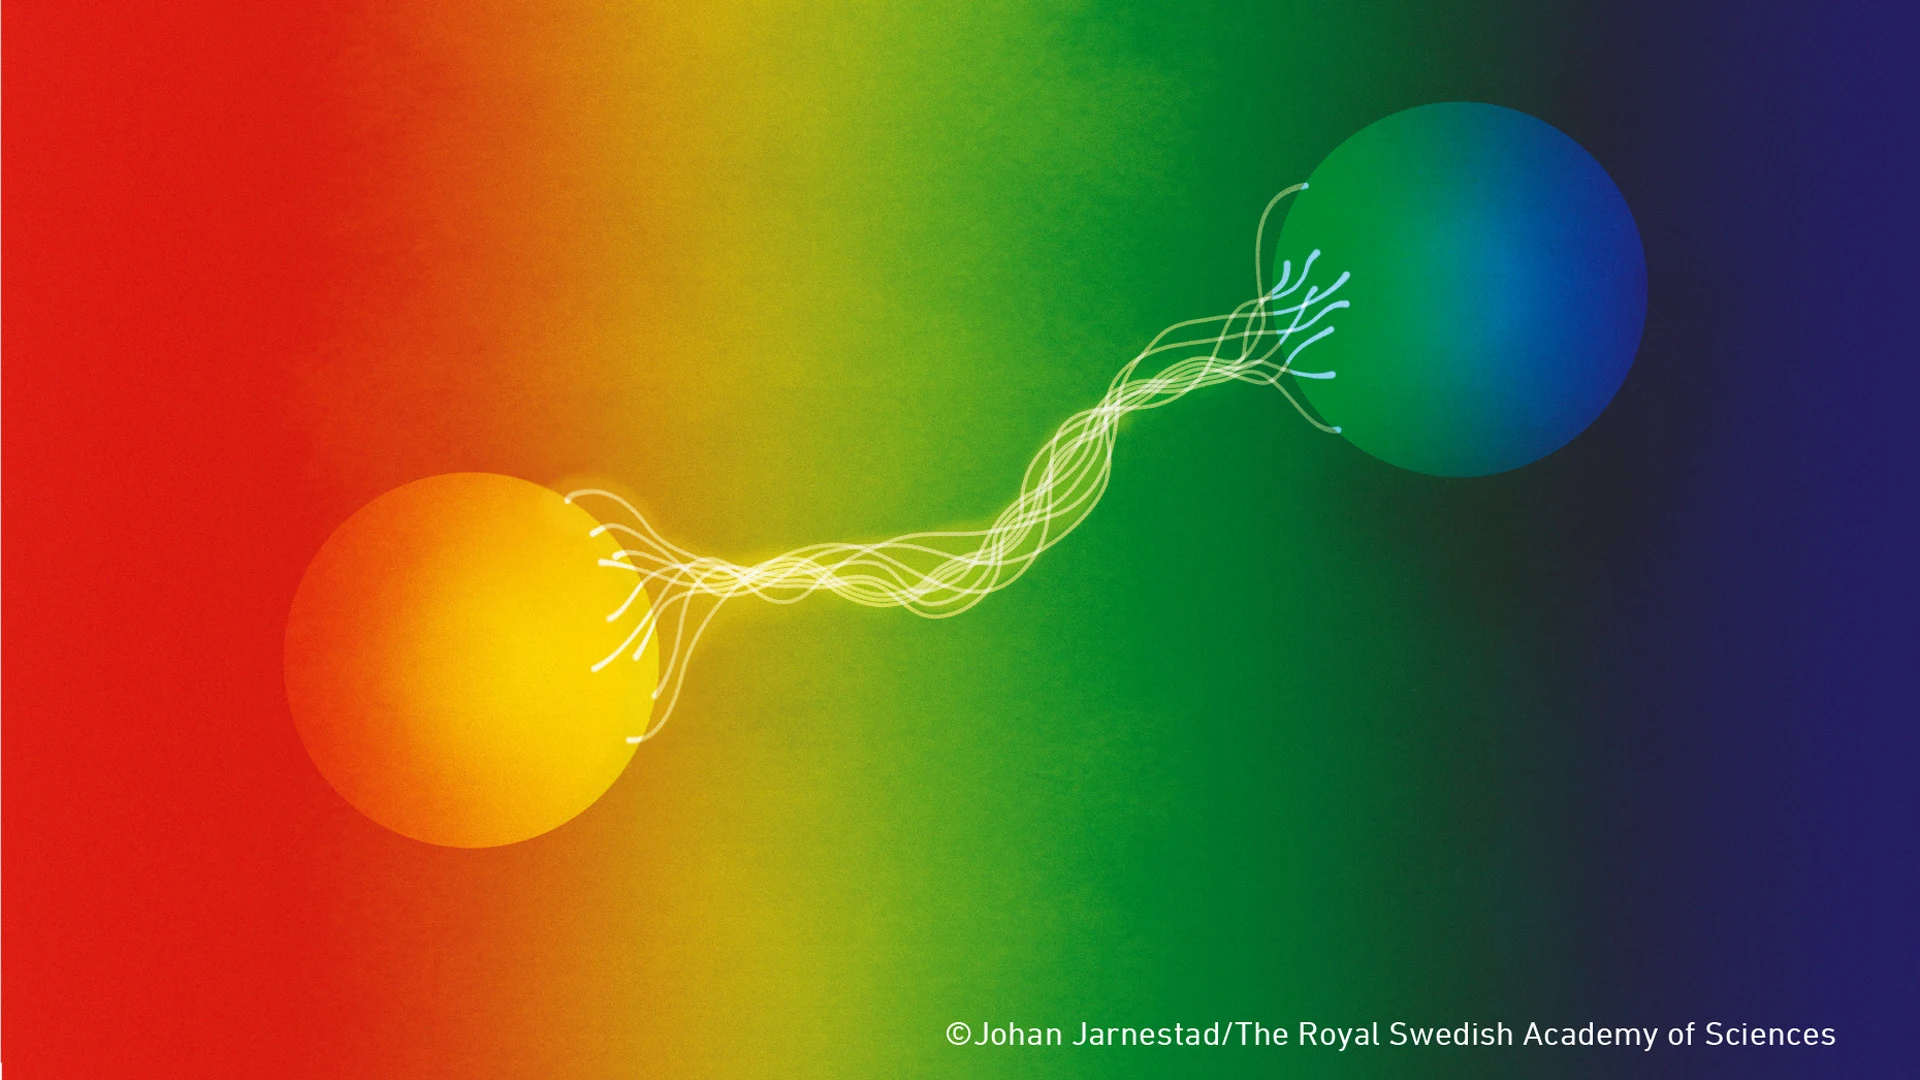 Représentation de l'intrication quantique par Johan Jarnestad Académie royale des sciences de Suède